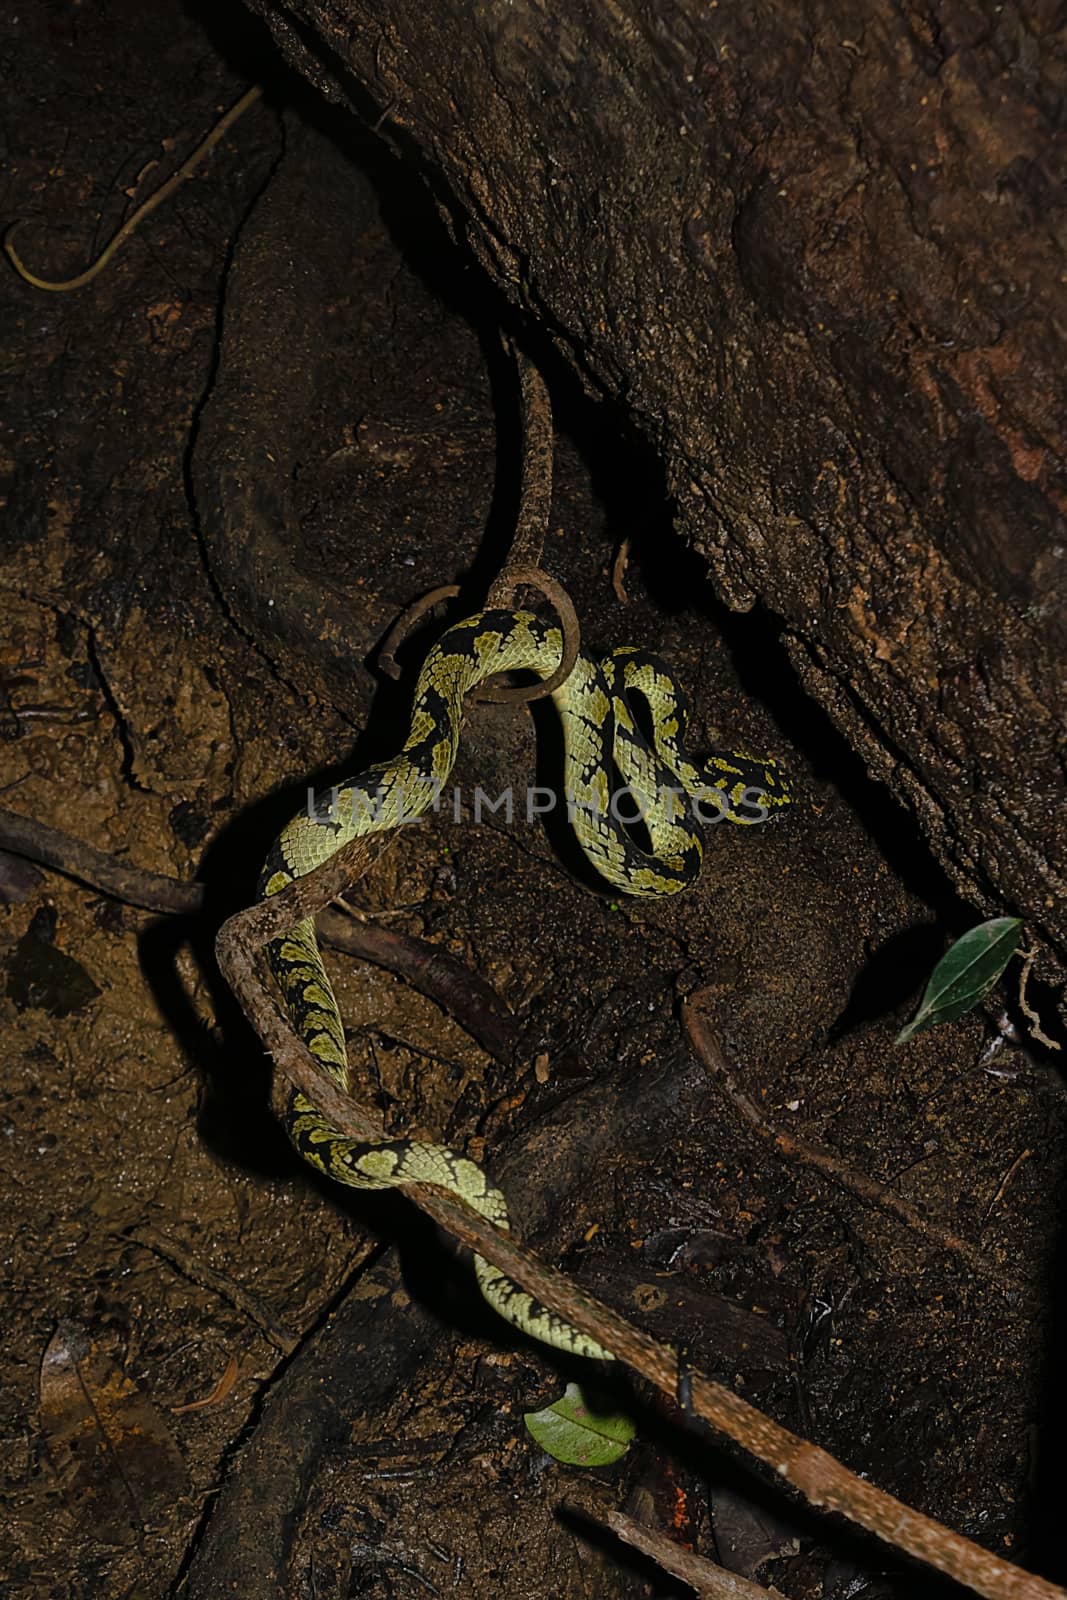 Deniyaya, Sri Lanka: The Green Pit Viper waiting to strike ite prey